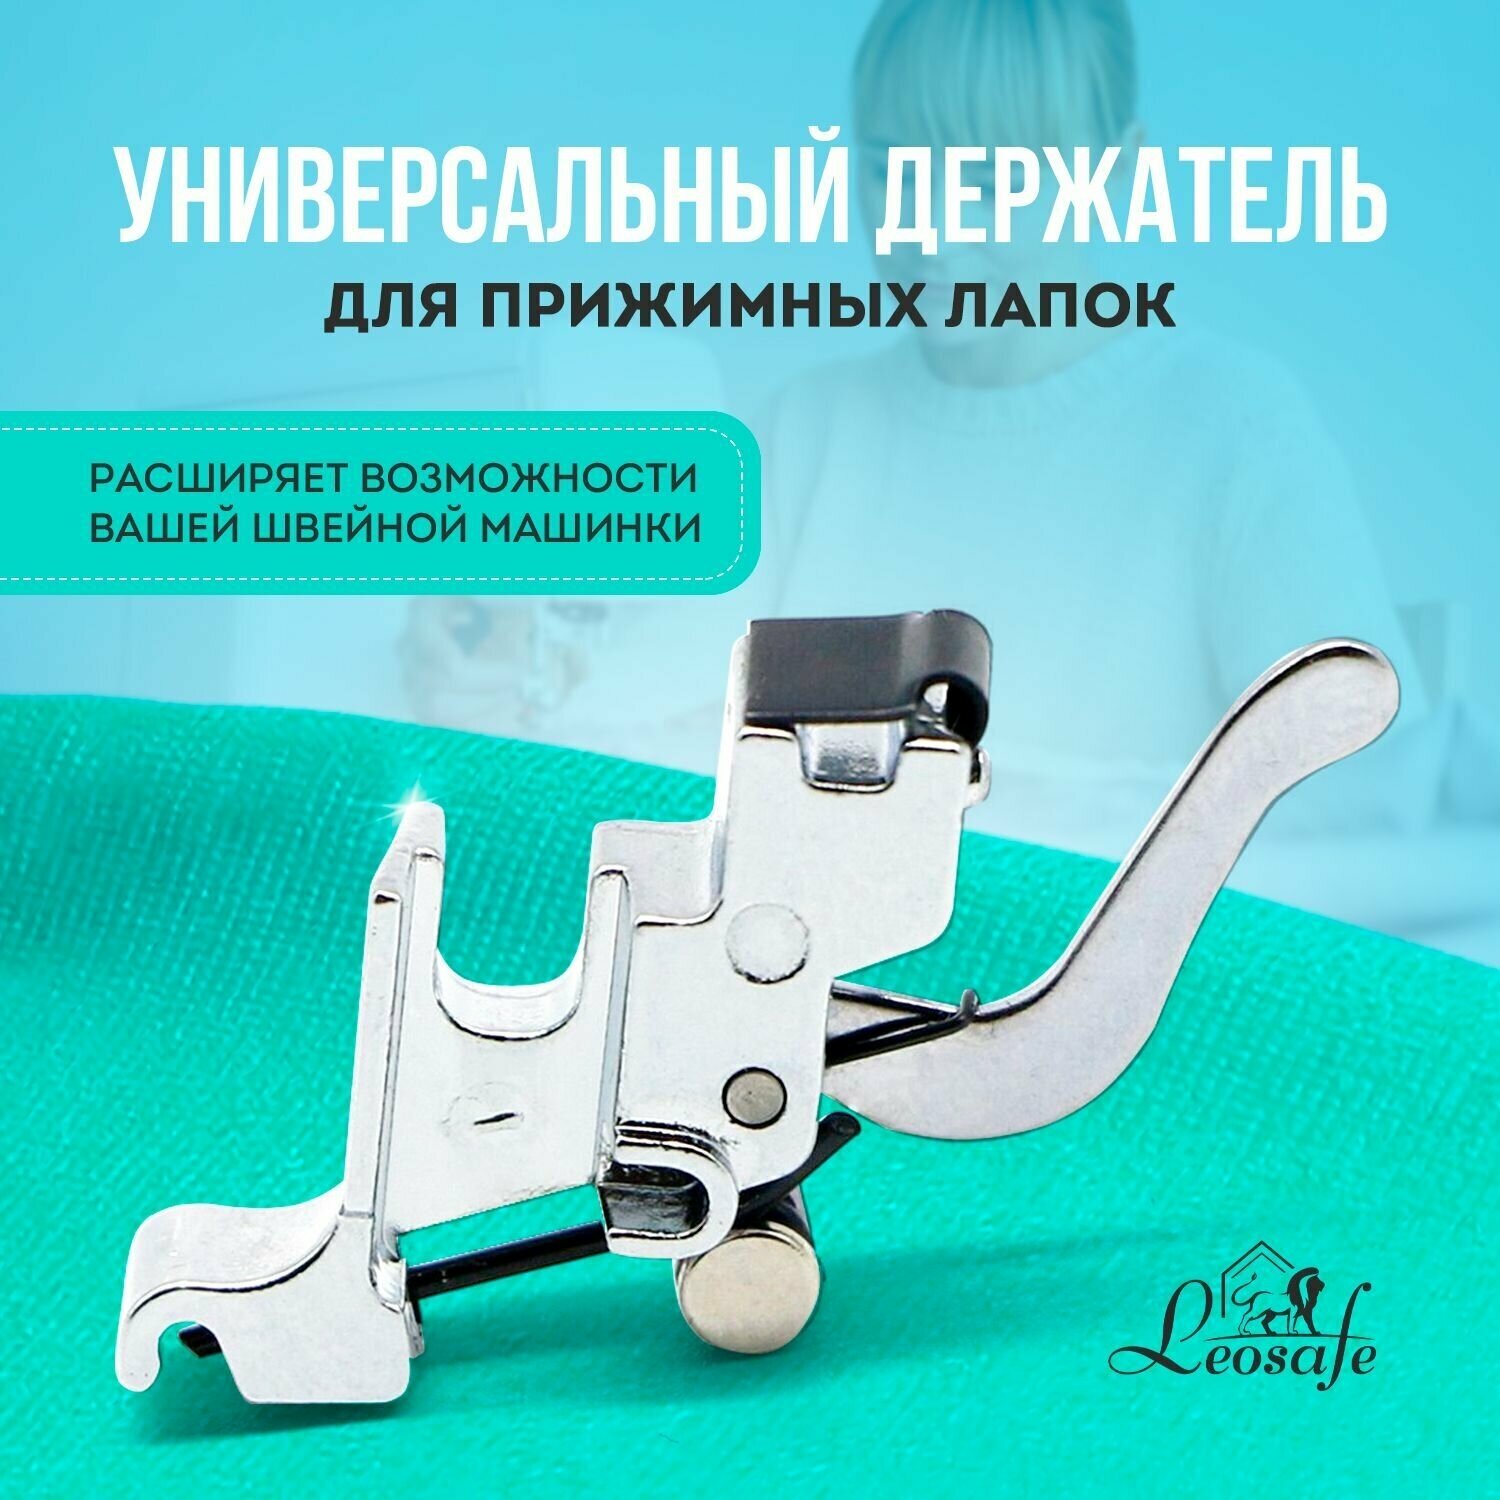 Универсальный держатель для лапок адаптер для швейных машин переходник инструмент для творчества шитья и рукоделия